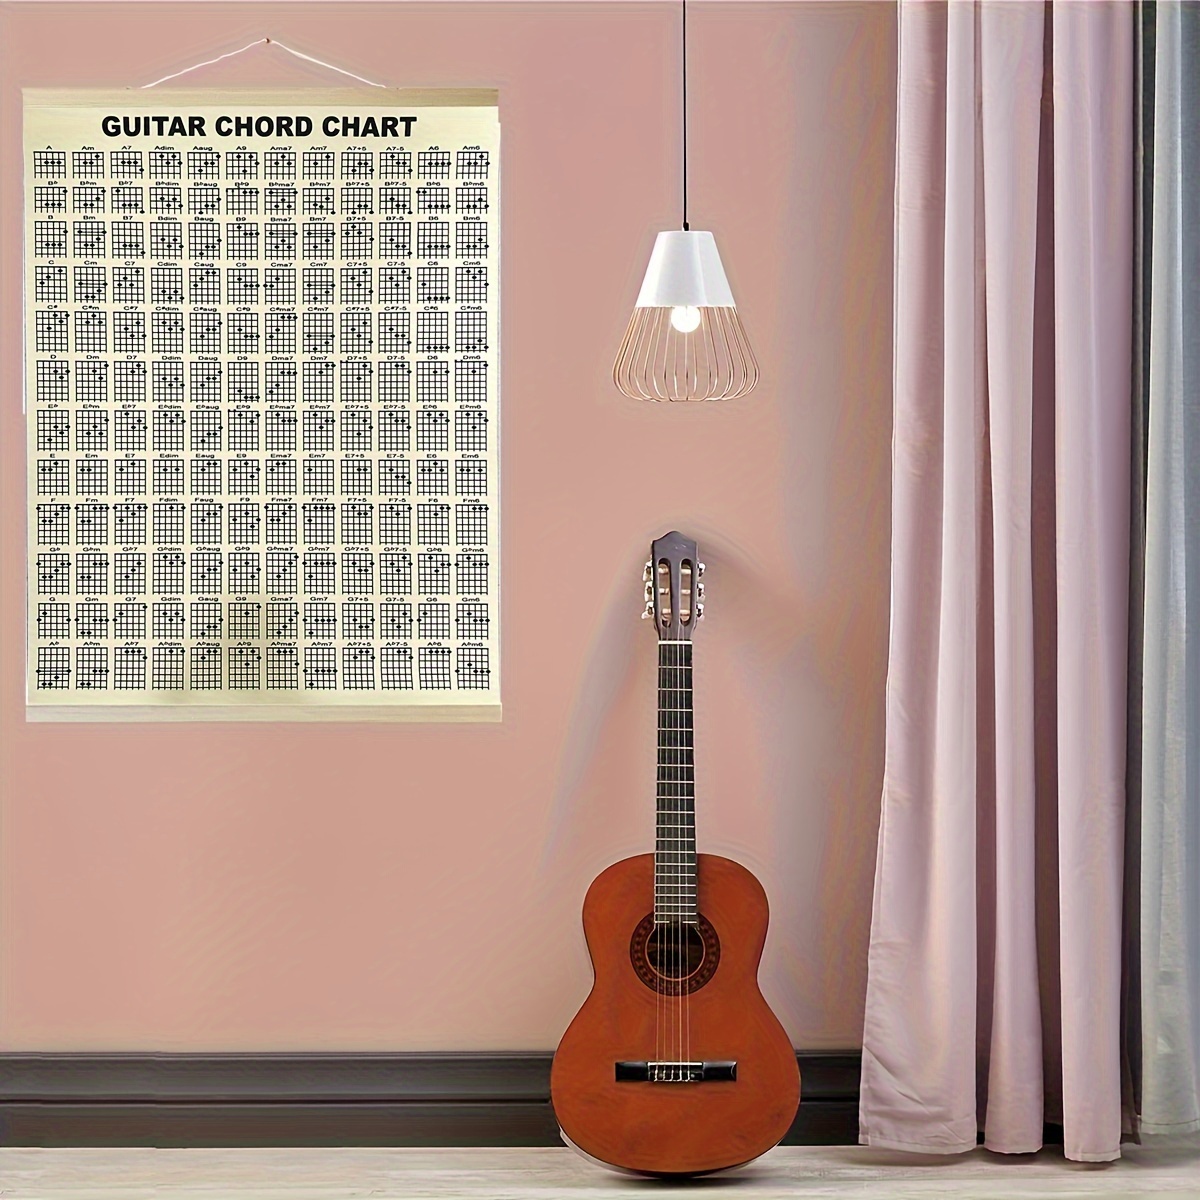 Le Livre D'Accords De Guitare: Accords De Guitare Acoustique